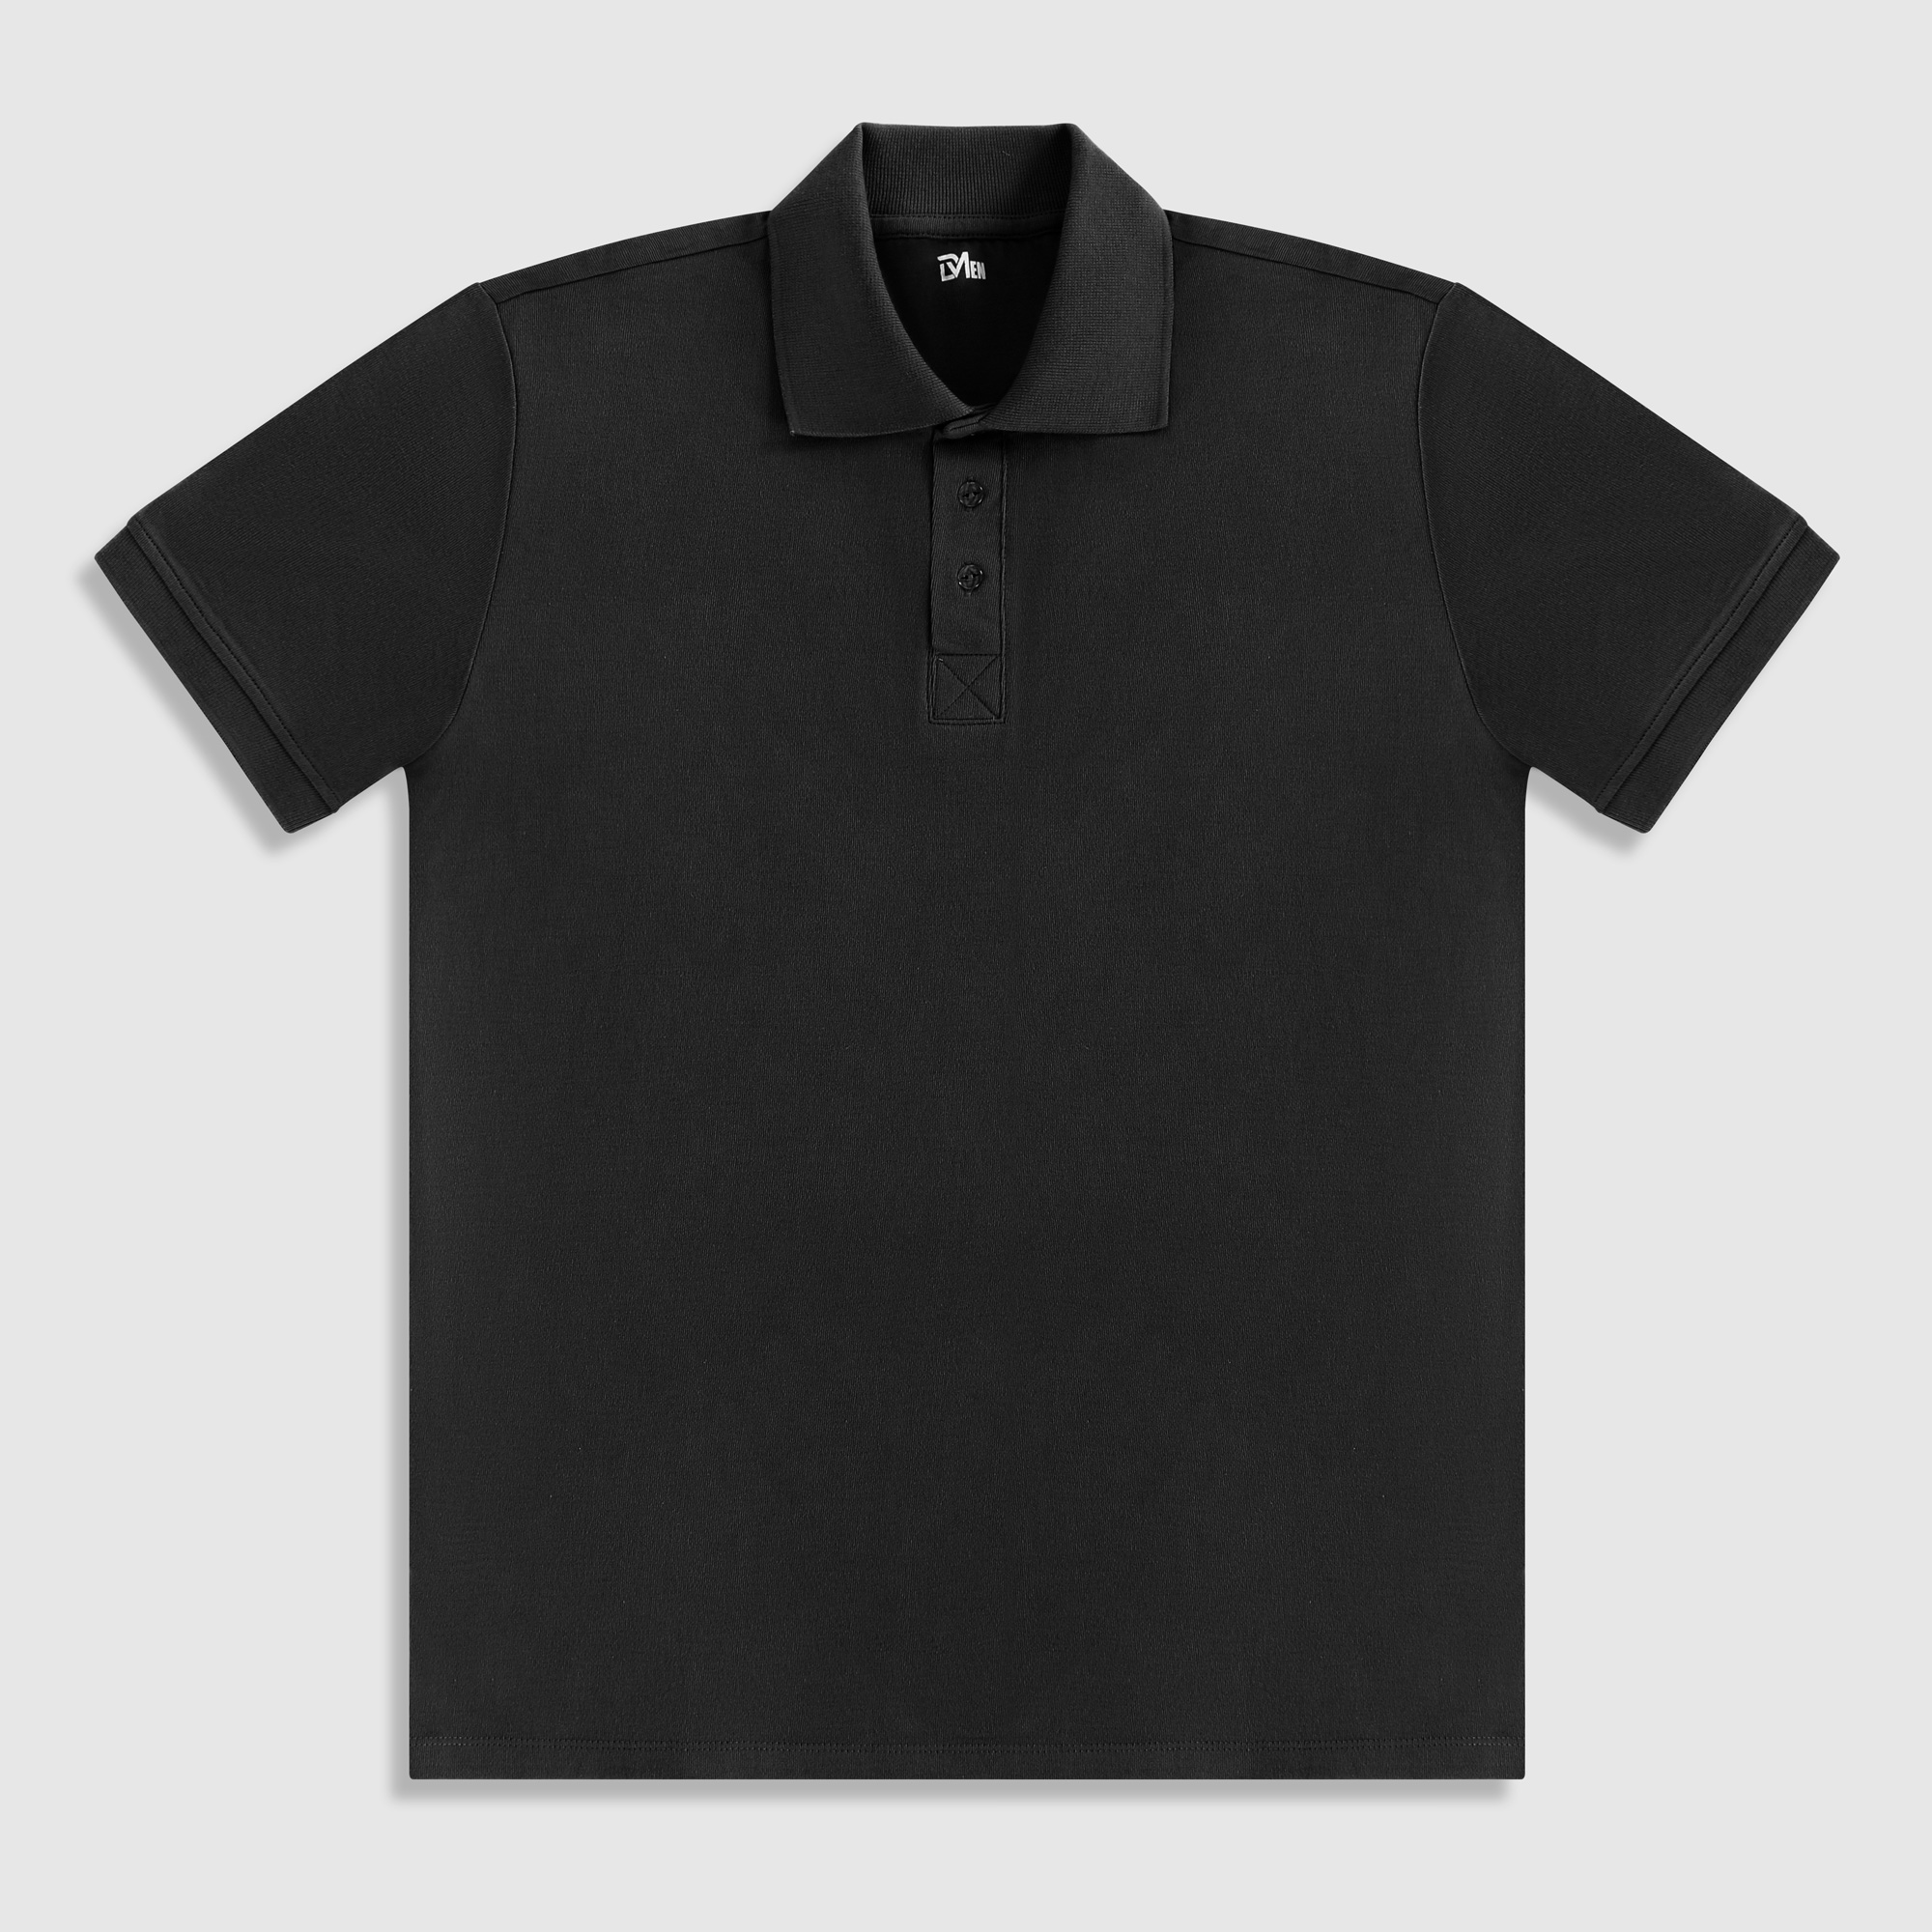 Рубашка мужская Diva Teks поло черная, цвет черный, размер M - фото 1